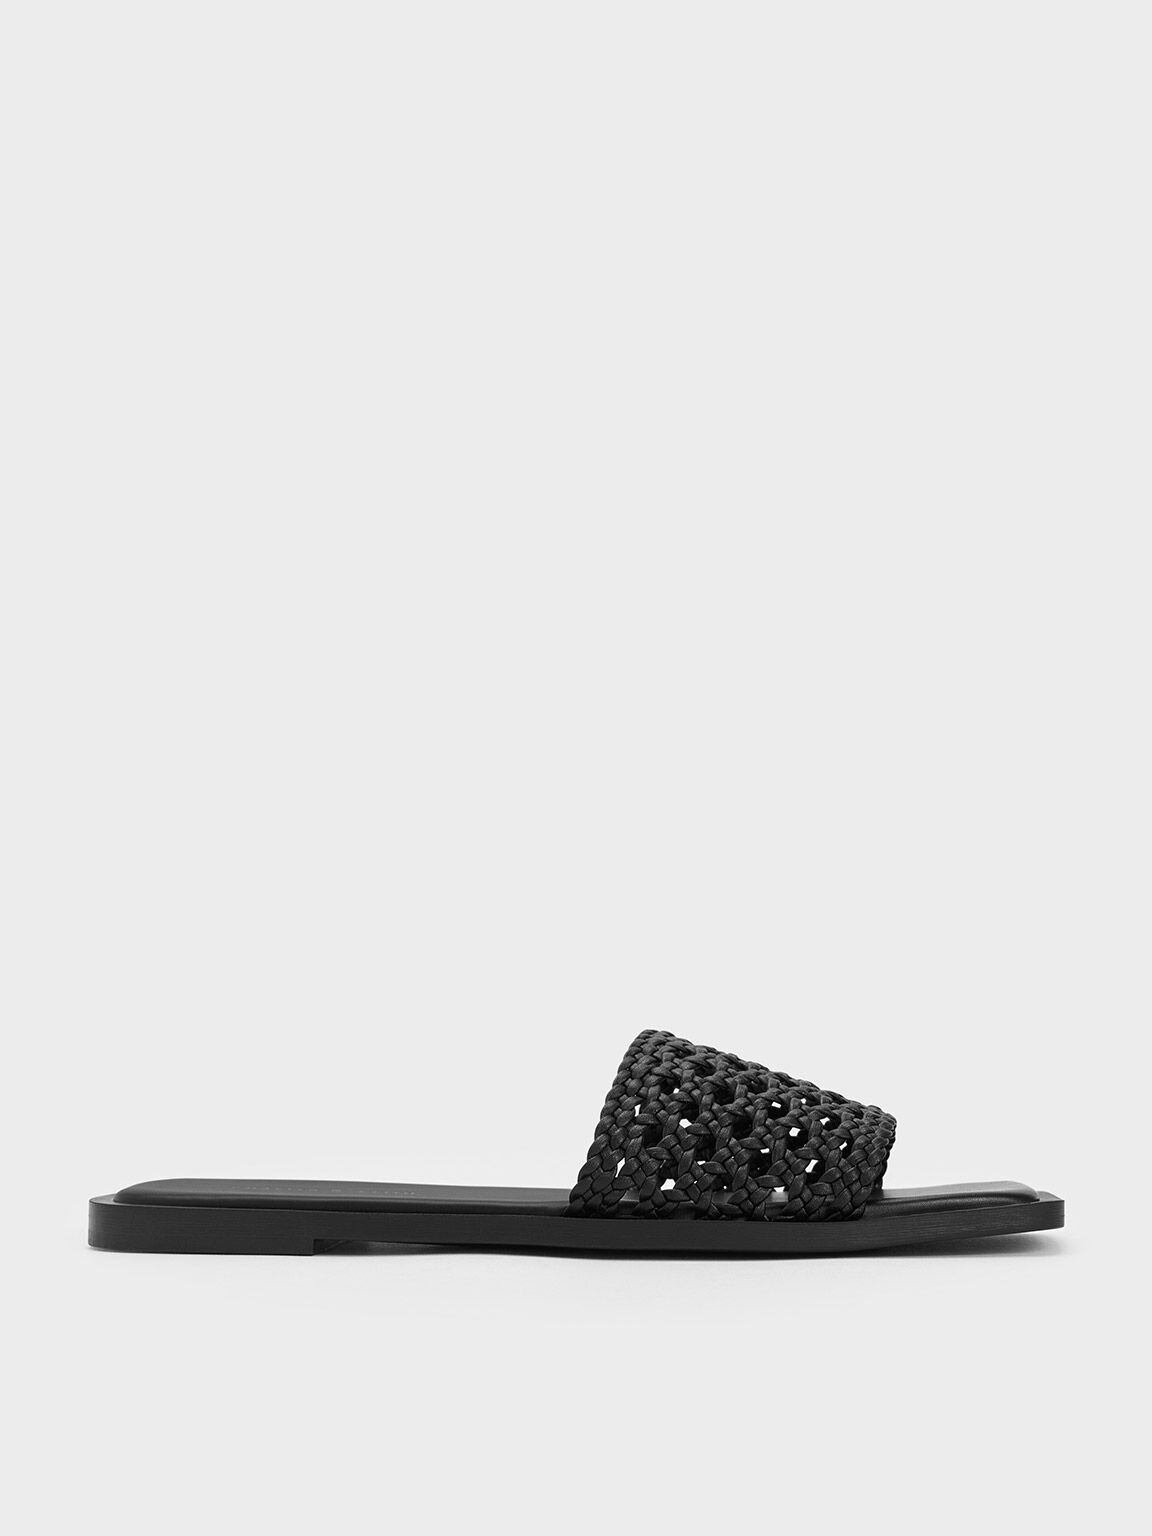 Sandal Slides Square-Toe Woven, Black, hi-res